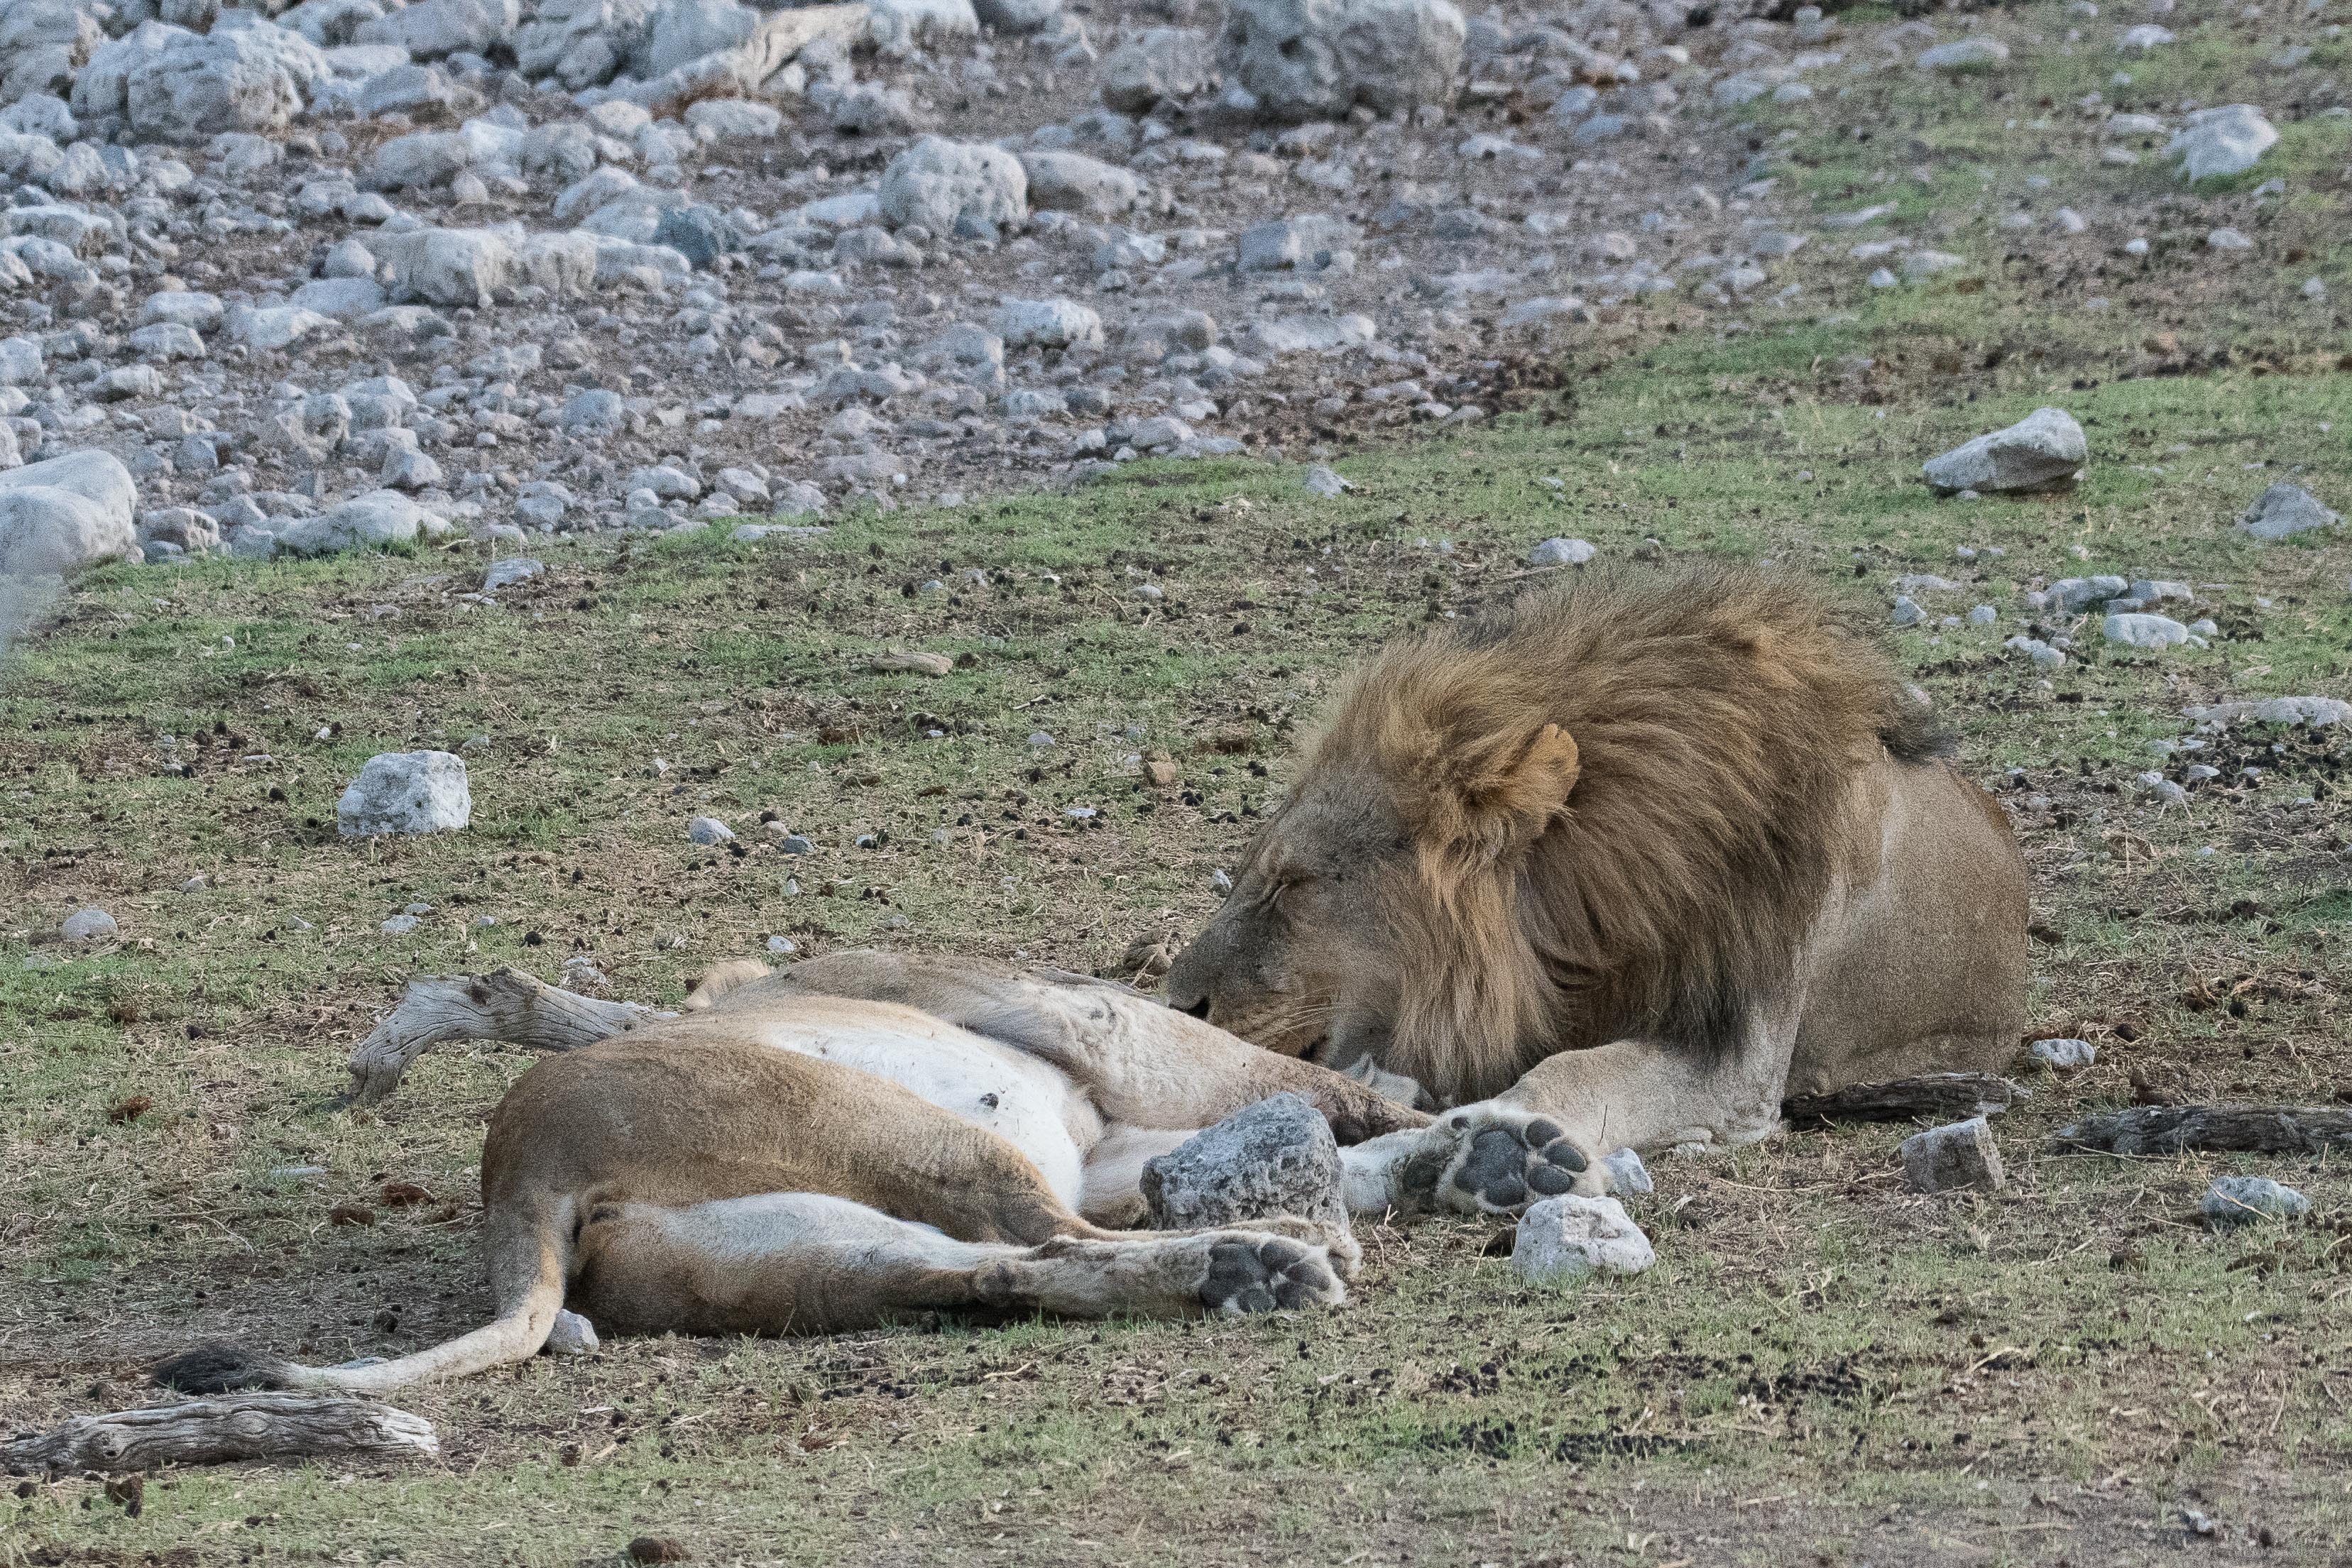 Le lion flaire la seconde lionne, cherchant probablement à déceler chez elle aussi l'émission de phéromones qui signeraient le début de sa propre période fertile, voire déjà l'imminence de son ovulation. Namutoni, Etosha, Namibie